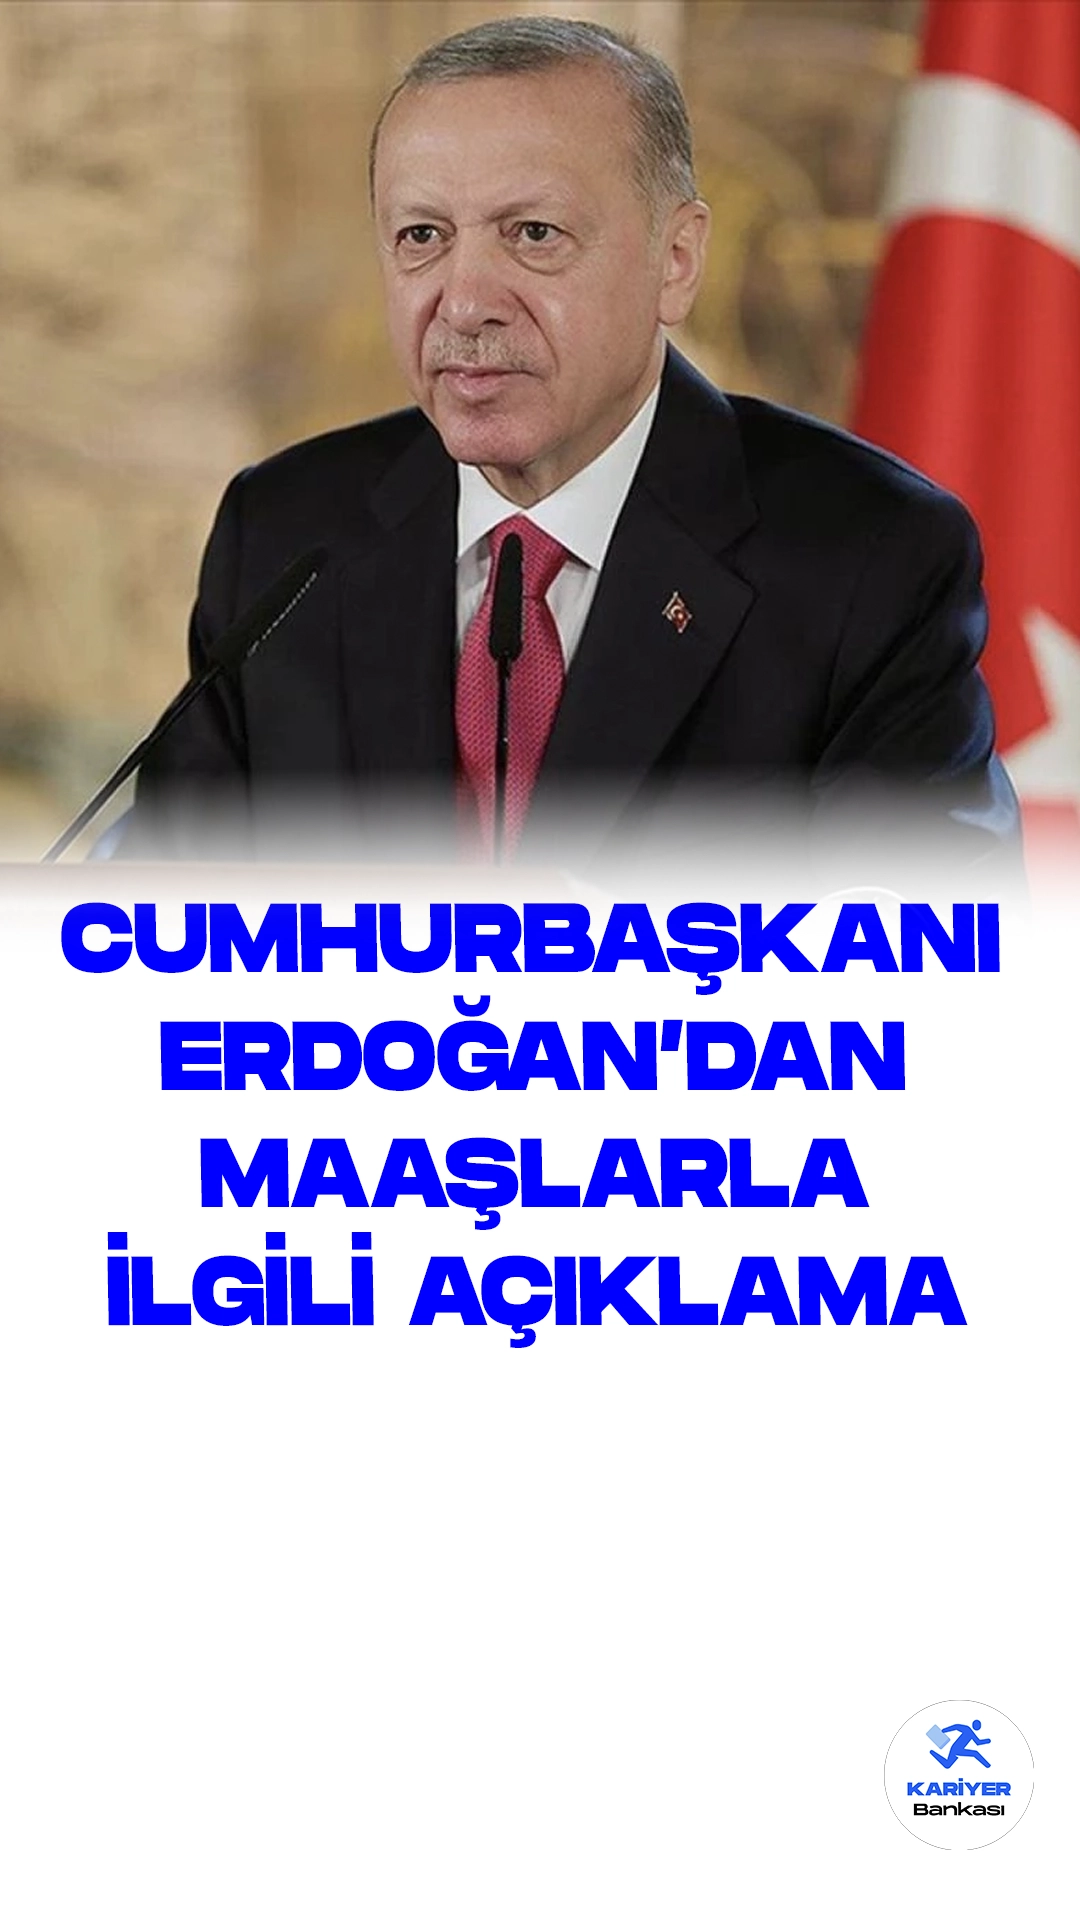 Cumhurbaşkanı Erdoğan, Emekli Maaşı Zammı Hakkında Açıklama Yaptı.Cumhurbaşkanı Recep Tayyip Erdoğan, milyonlarca vatandaşın heyecanla beklediği emekli maaşı zammıyla ilgili önemli açıklamalarda bulundu. Erdoğan, bu konuya ilişkin olarak "Emeklilerimizin hak ettikleri refah düzeyine ulaşmaları için gayret göstereceğiz" şeklinde konuştu.